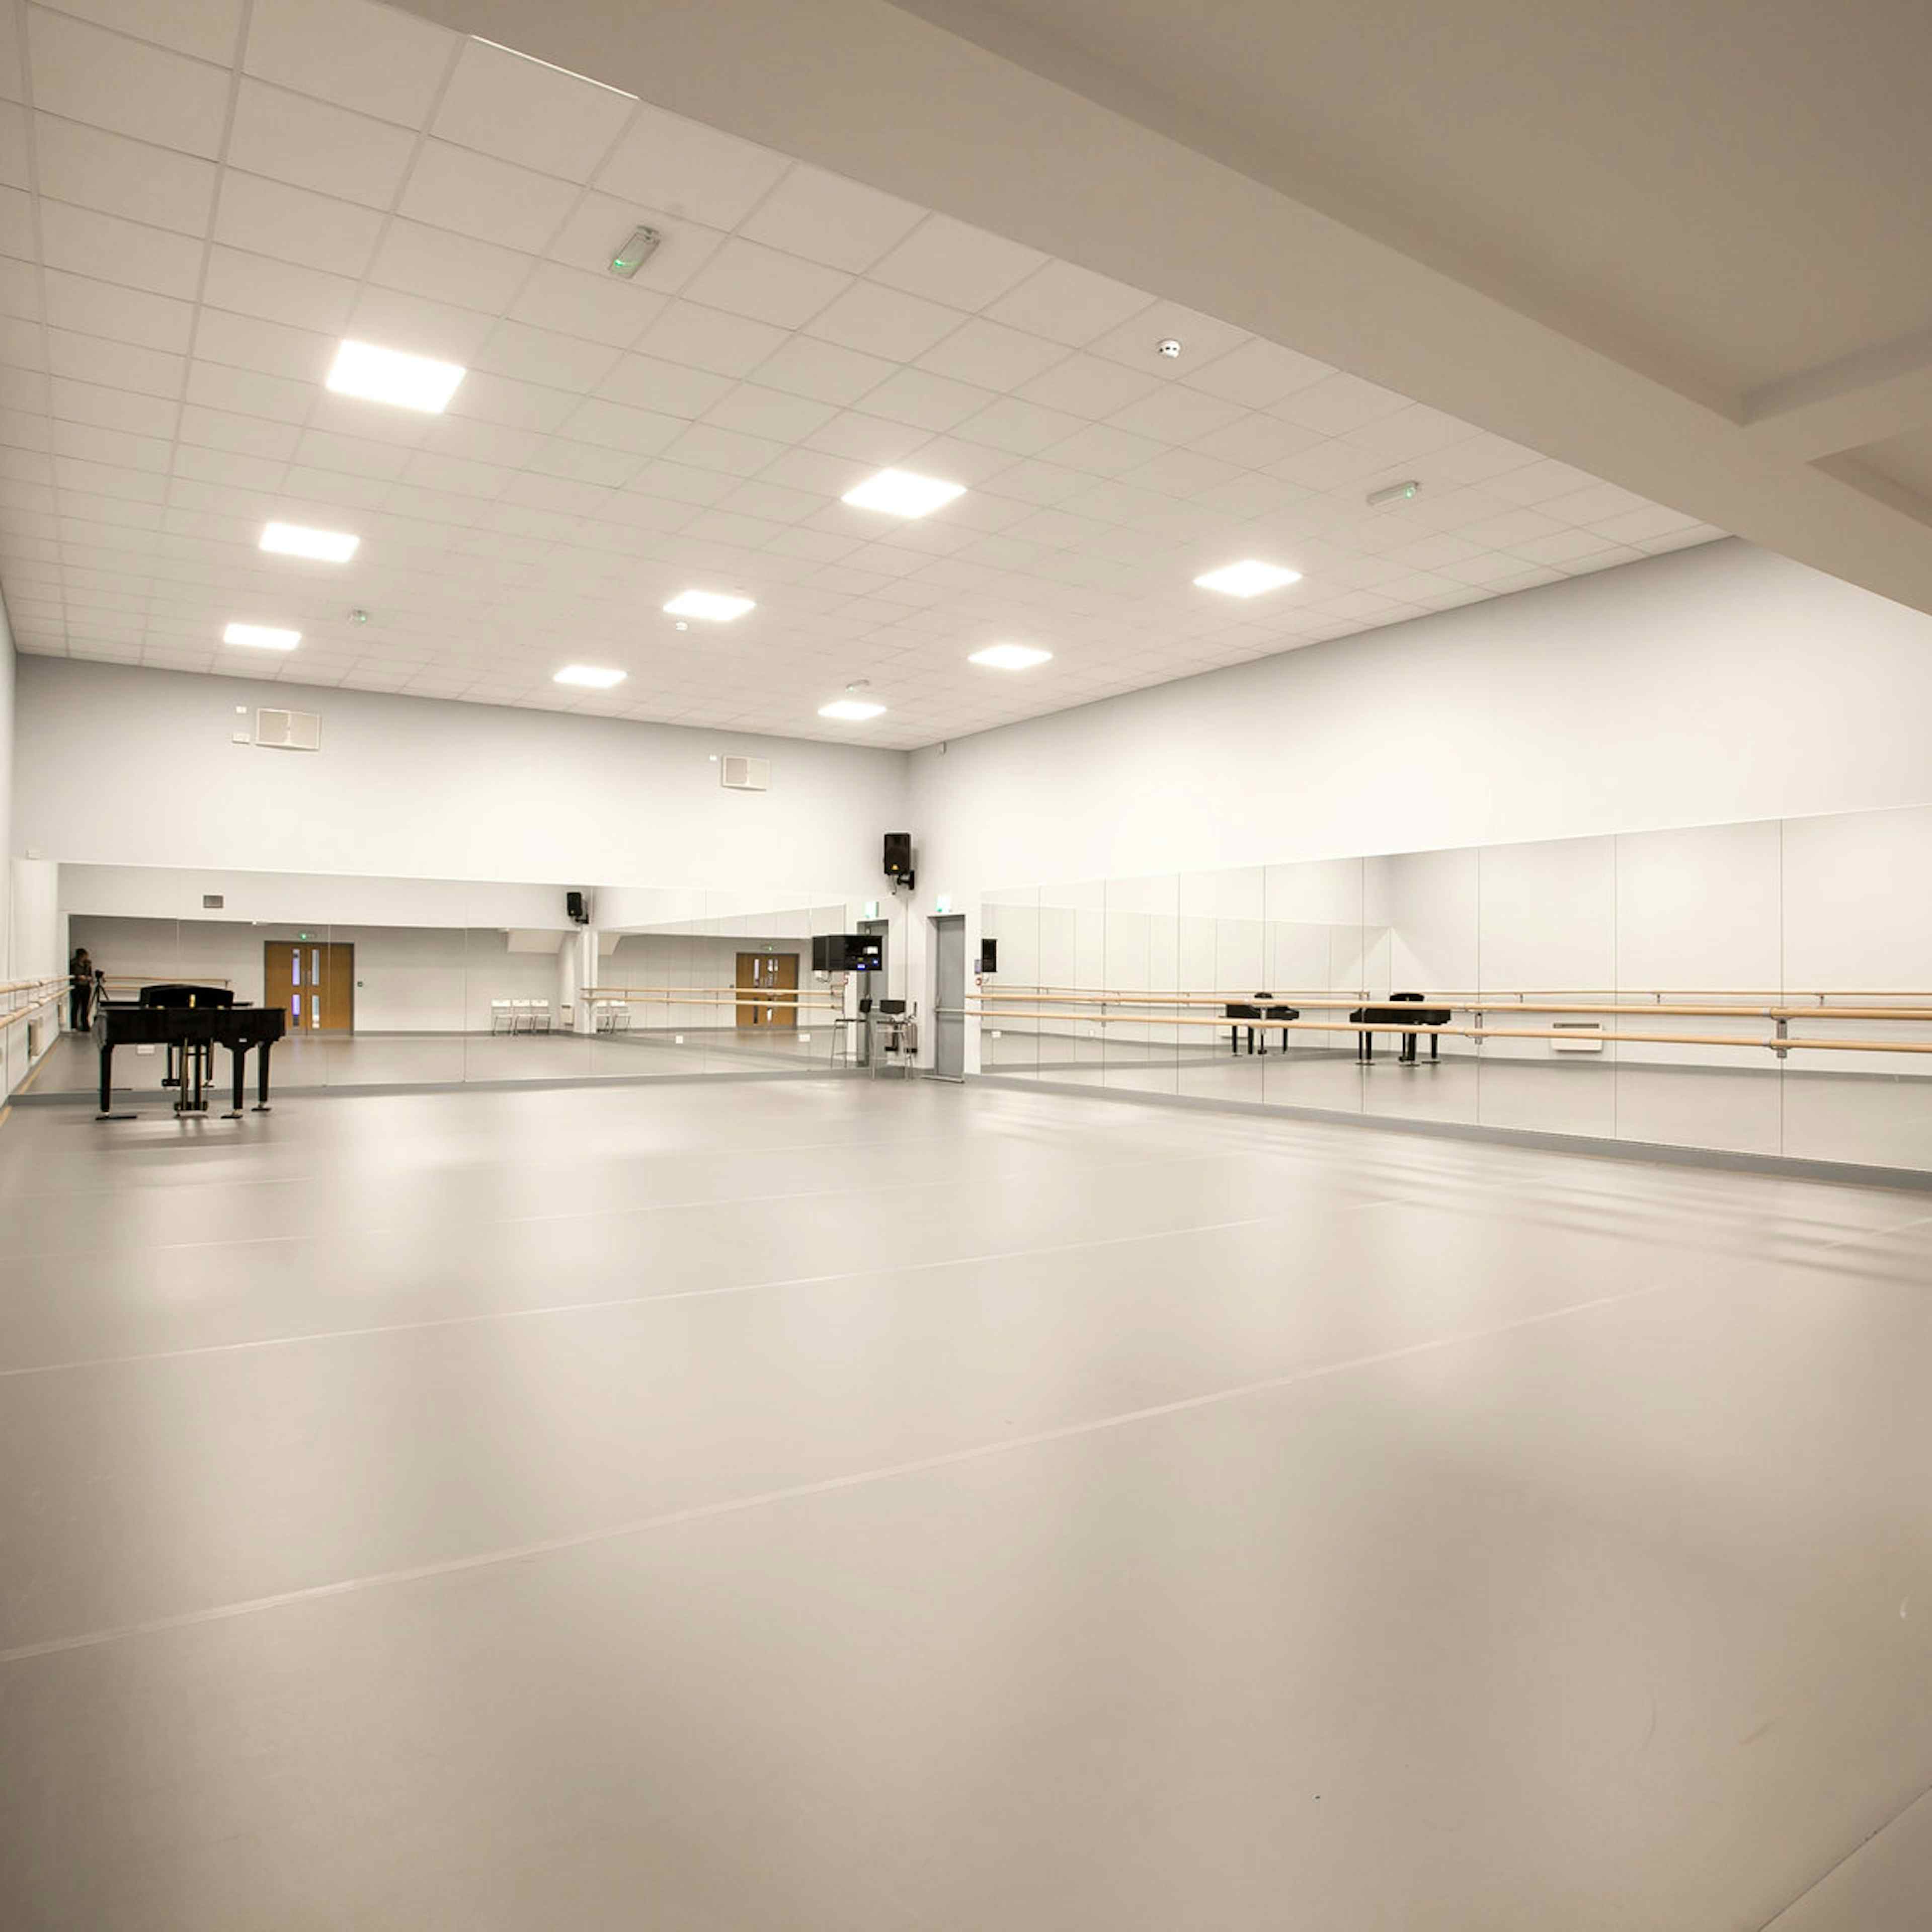 The Studios - Adagio School of Dance - image 3